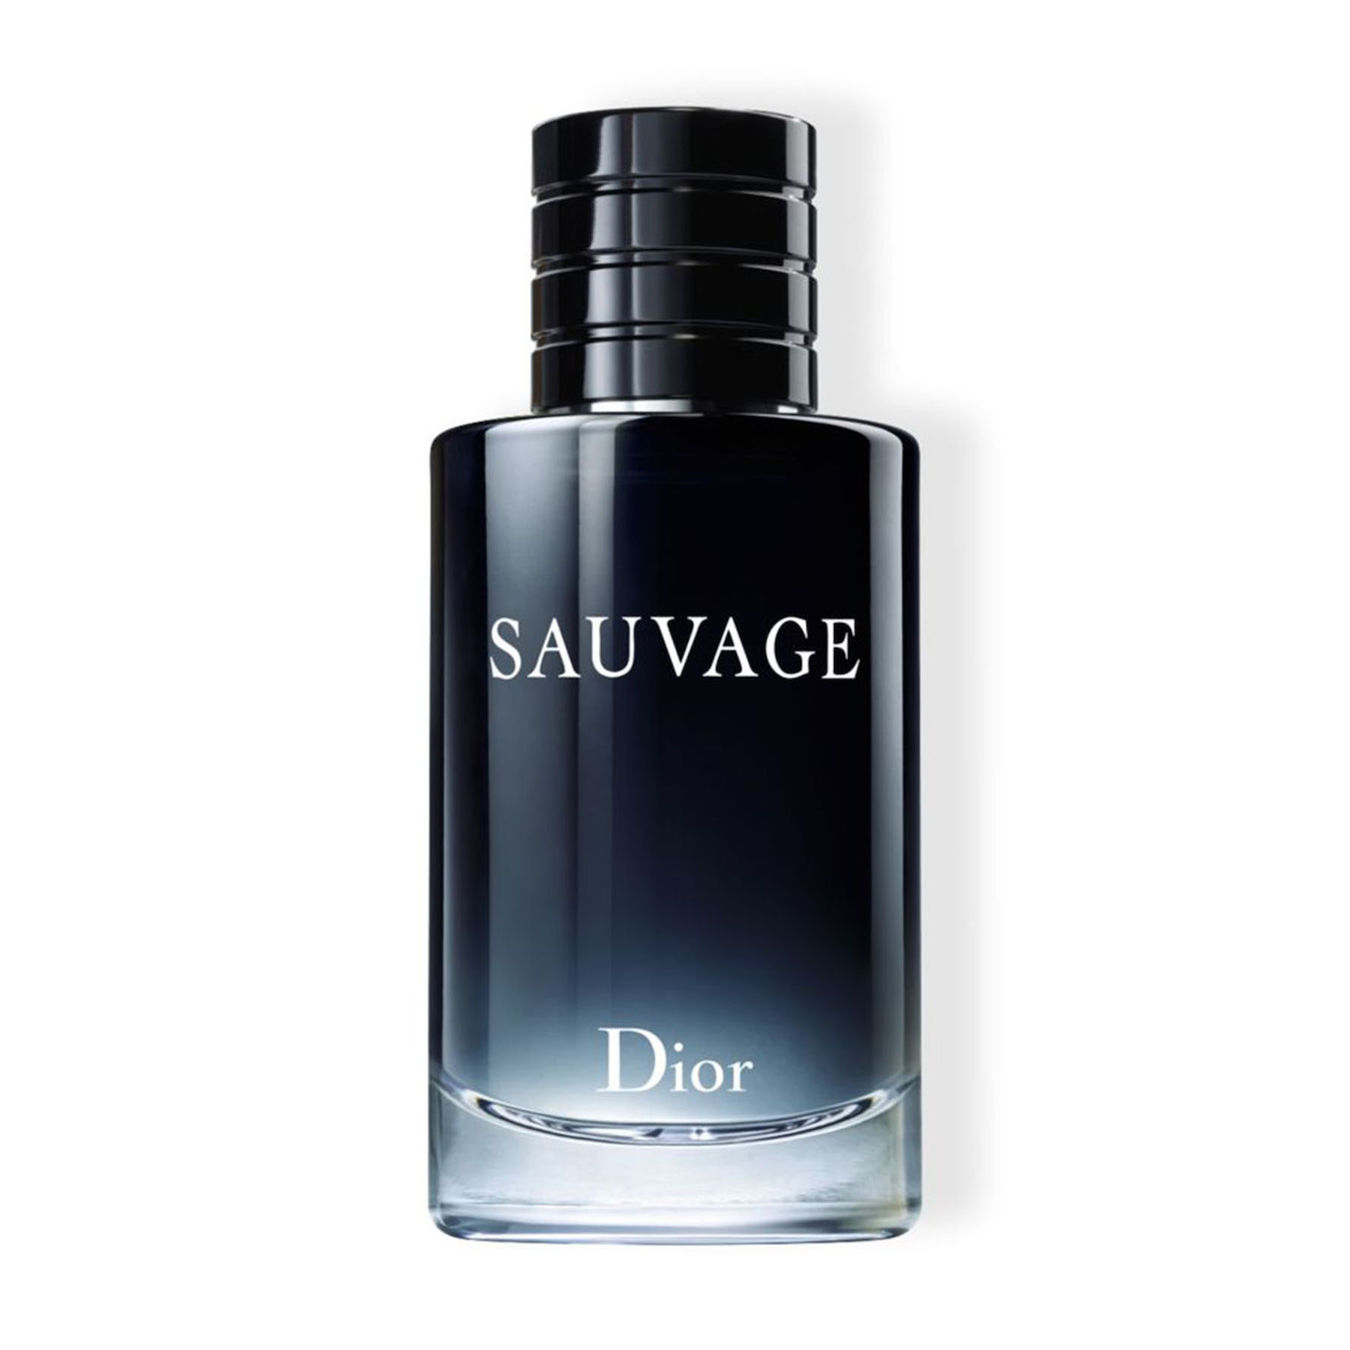 DIOR Sauvage Eau de Toilette Refillable von Dior